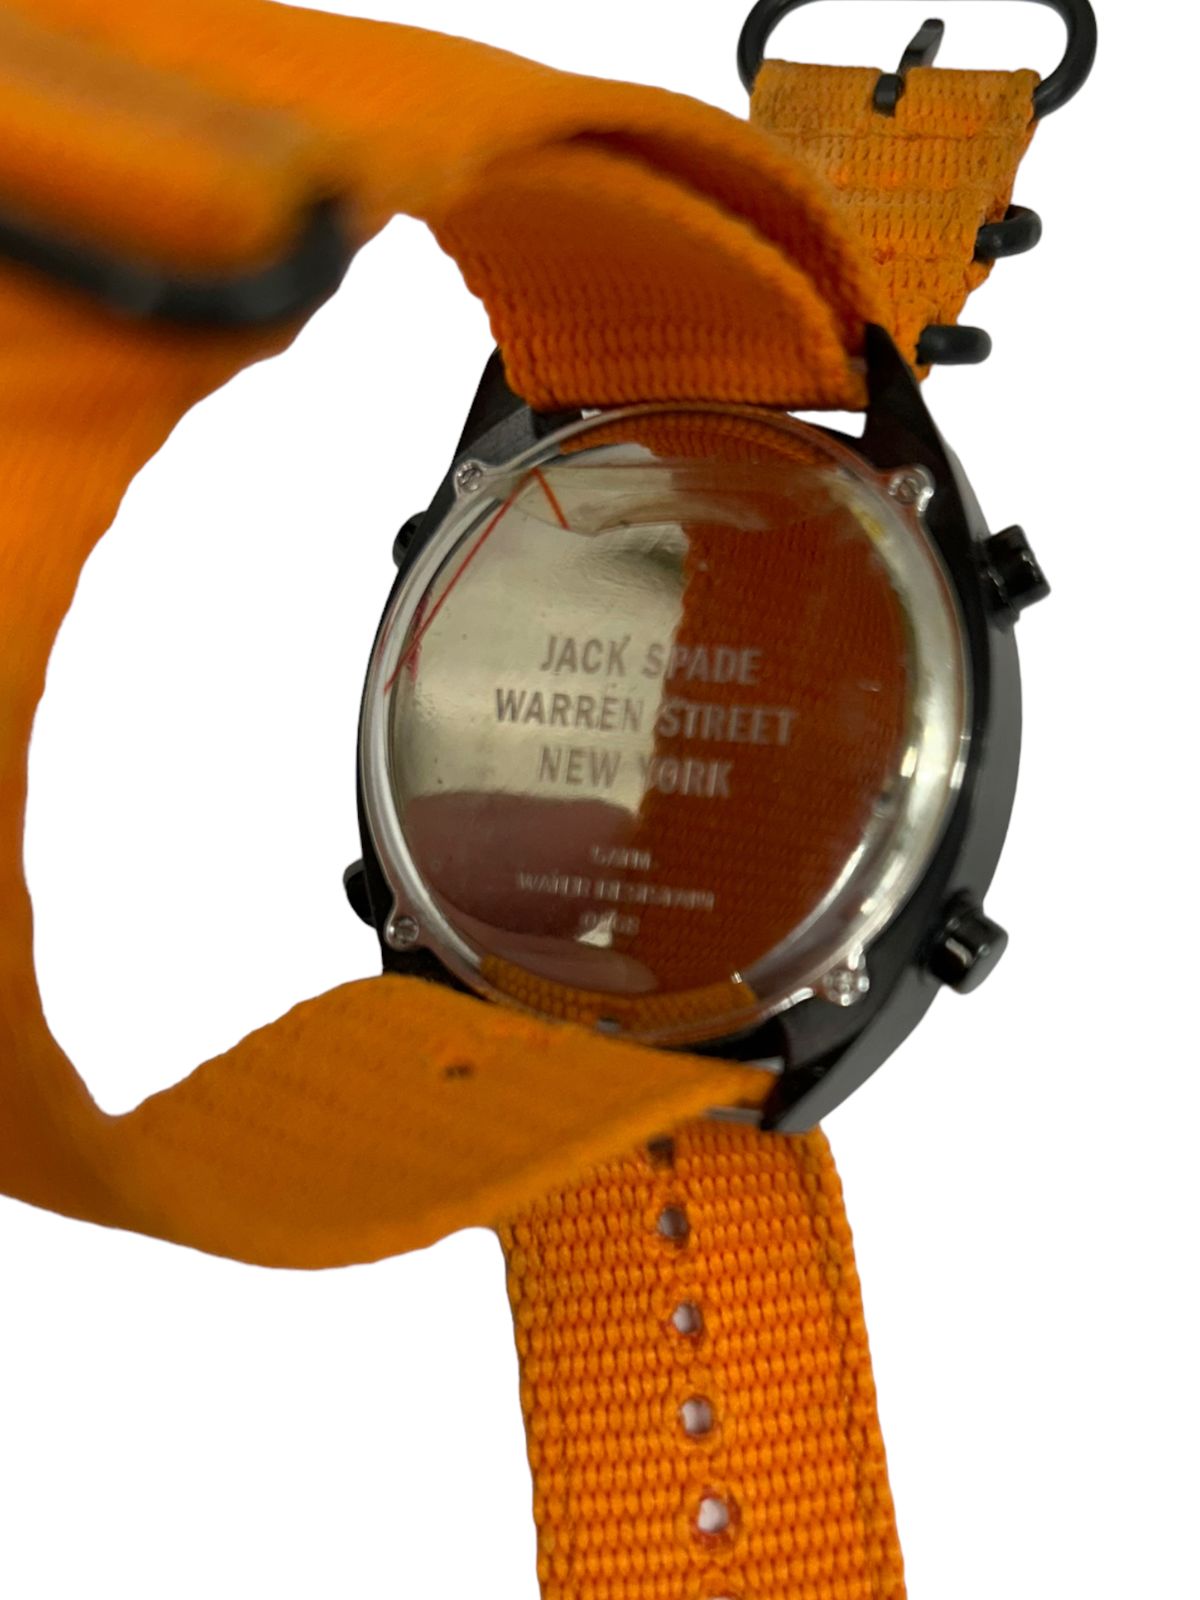 JACK SPADE (ジャックスペード) 腕時計 デジタル 0168 ナイロン ...